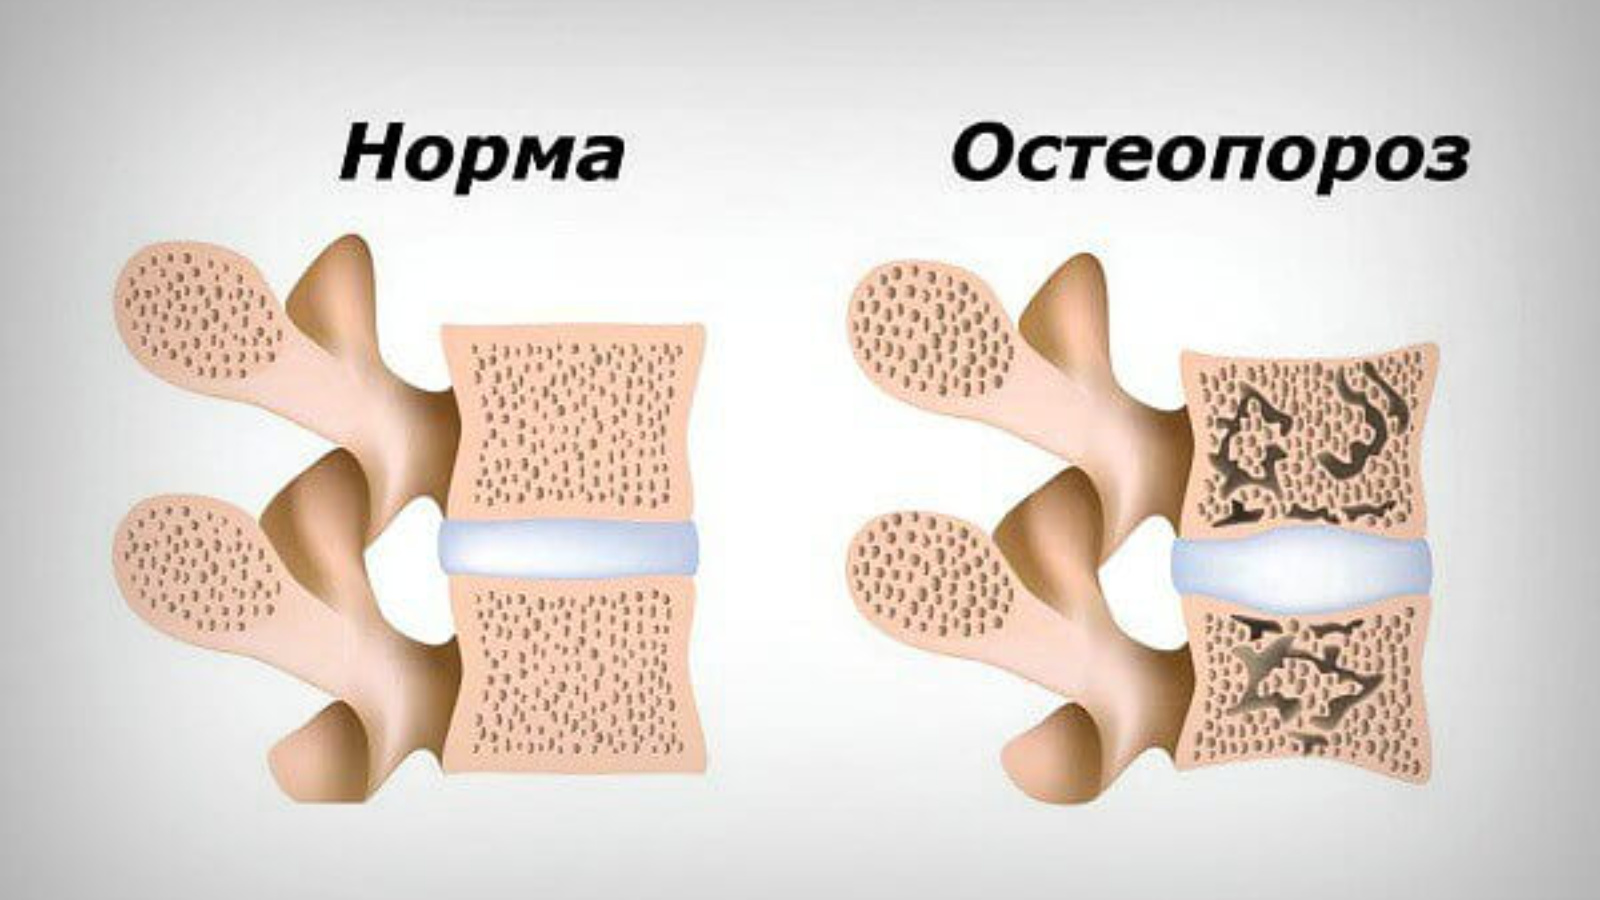 Улучшает кости. Остеопороз. Остеопороз кость. Кость при остеопорозе. Остеопороз картинки.